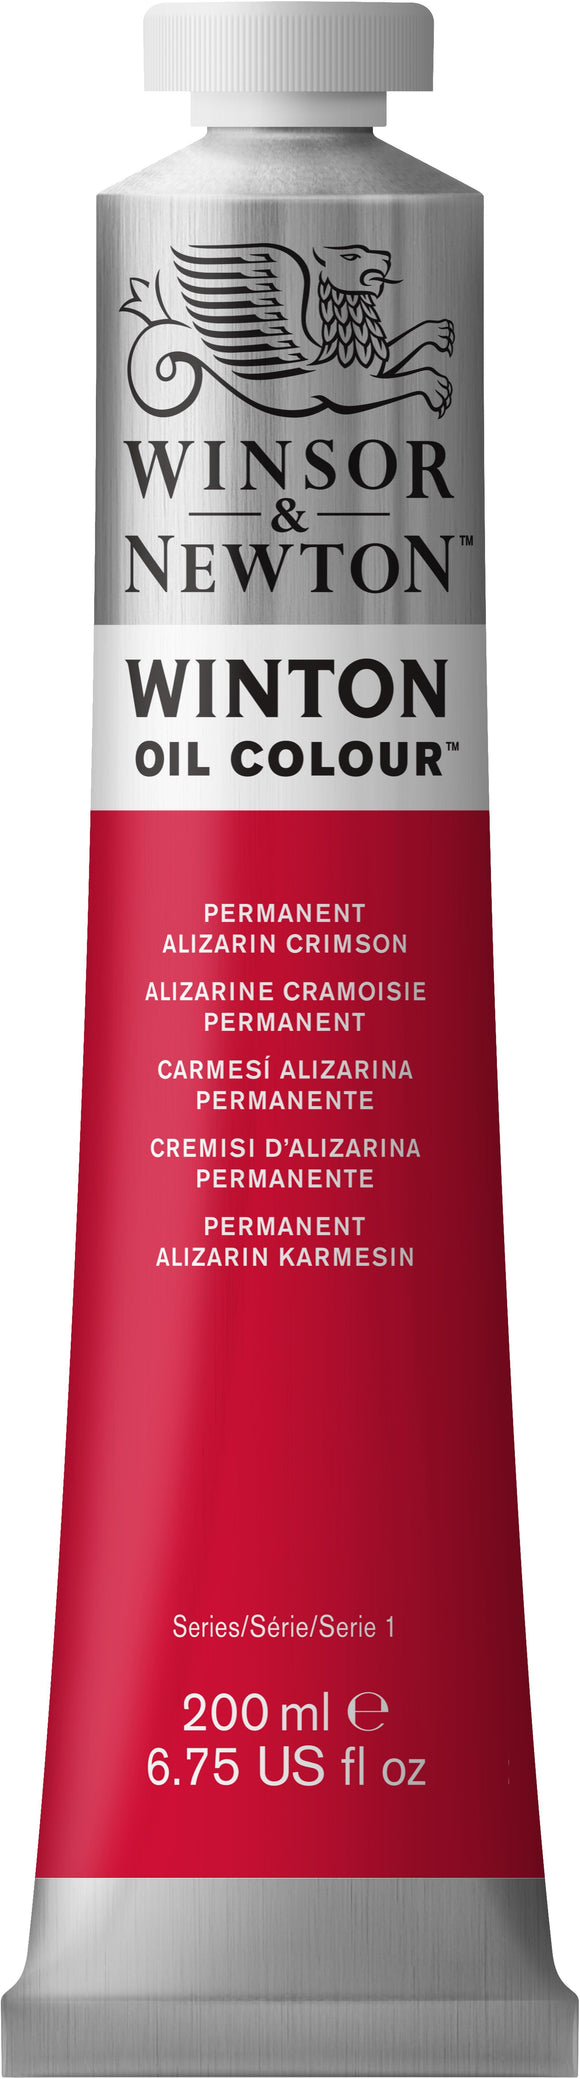 Winsor & Newton Winton Oil Color Permanent Alizarin Crimson 200Ml